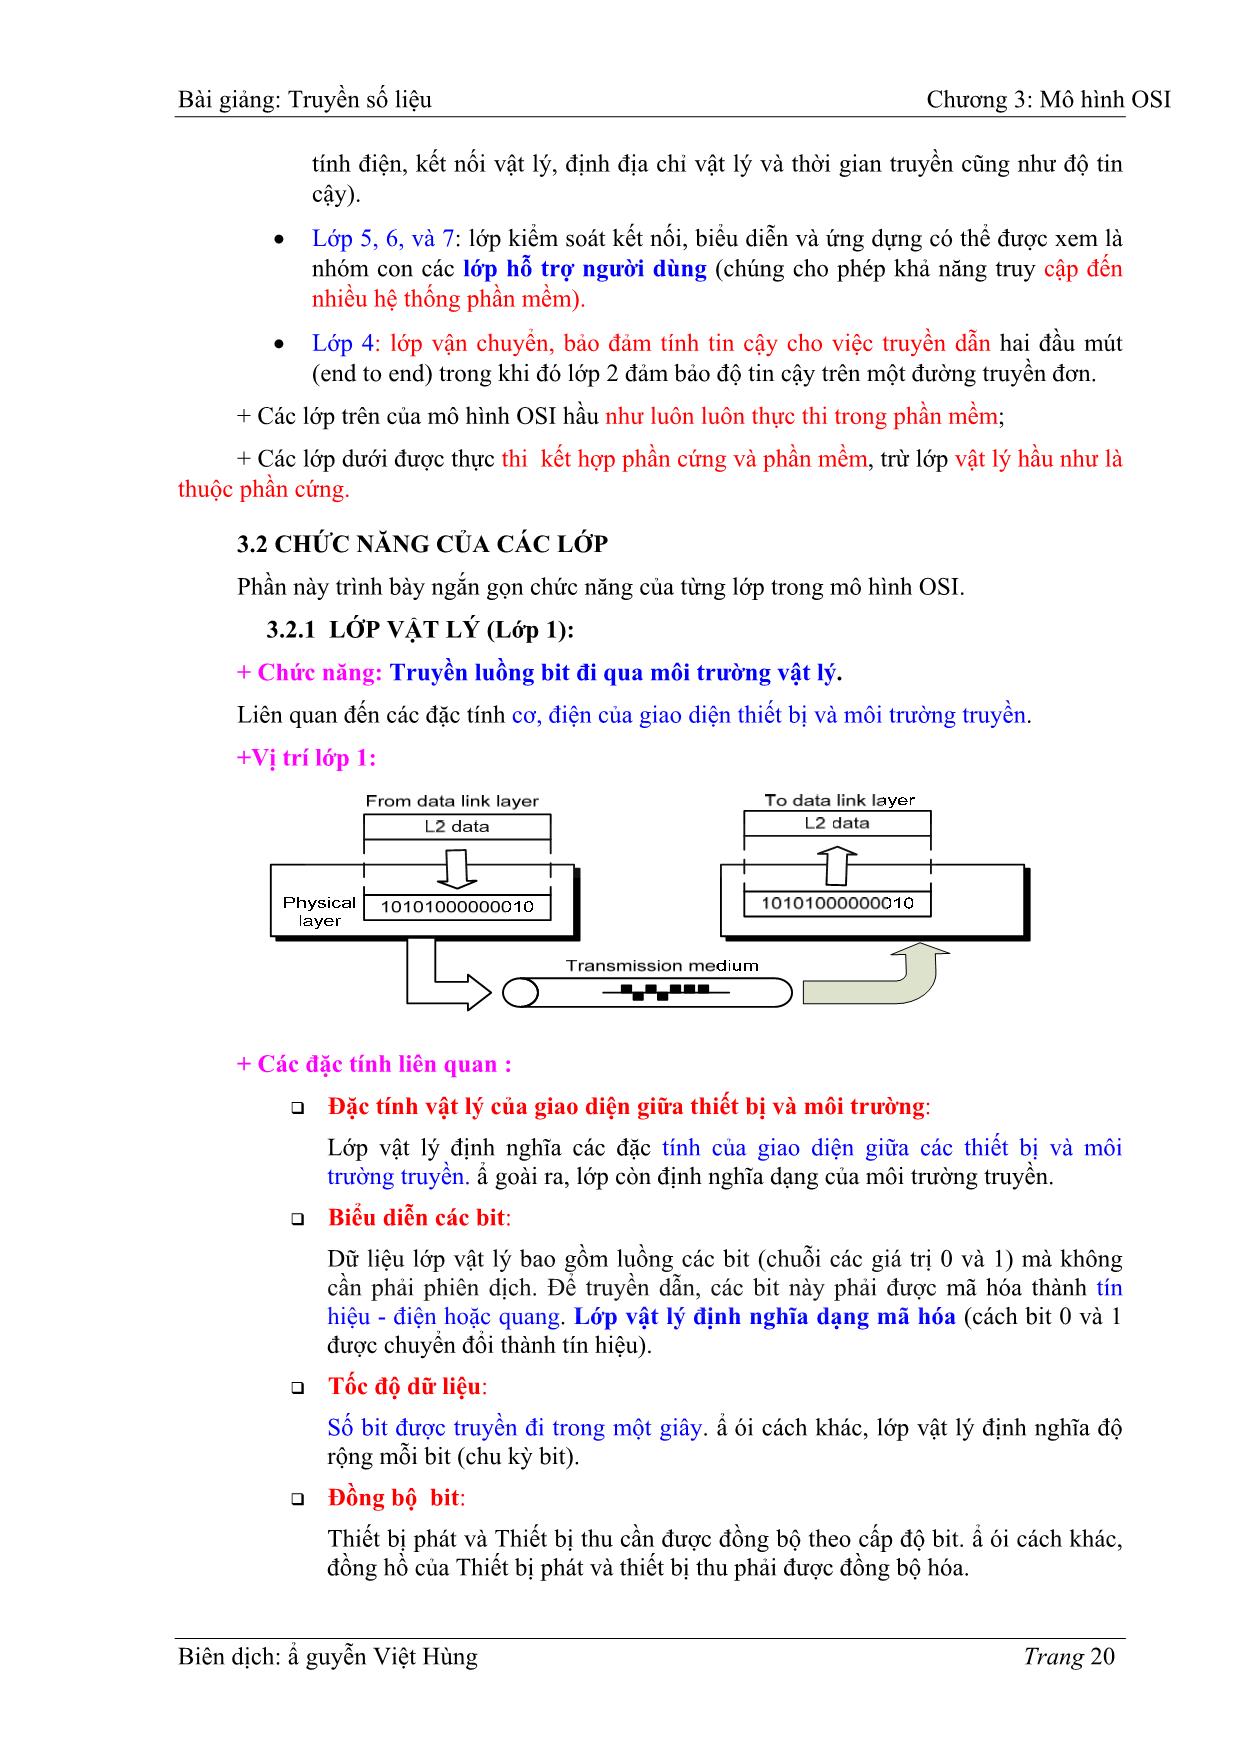 Bài giảng Truyền số liệu - Chương 3: Mô hình OIS - Nguyễn Việt Hùng trang 4